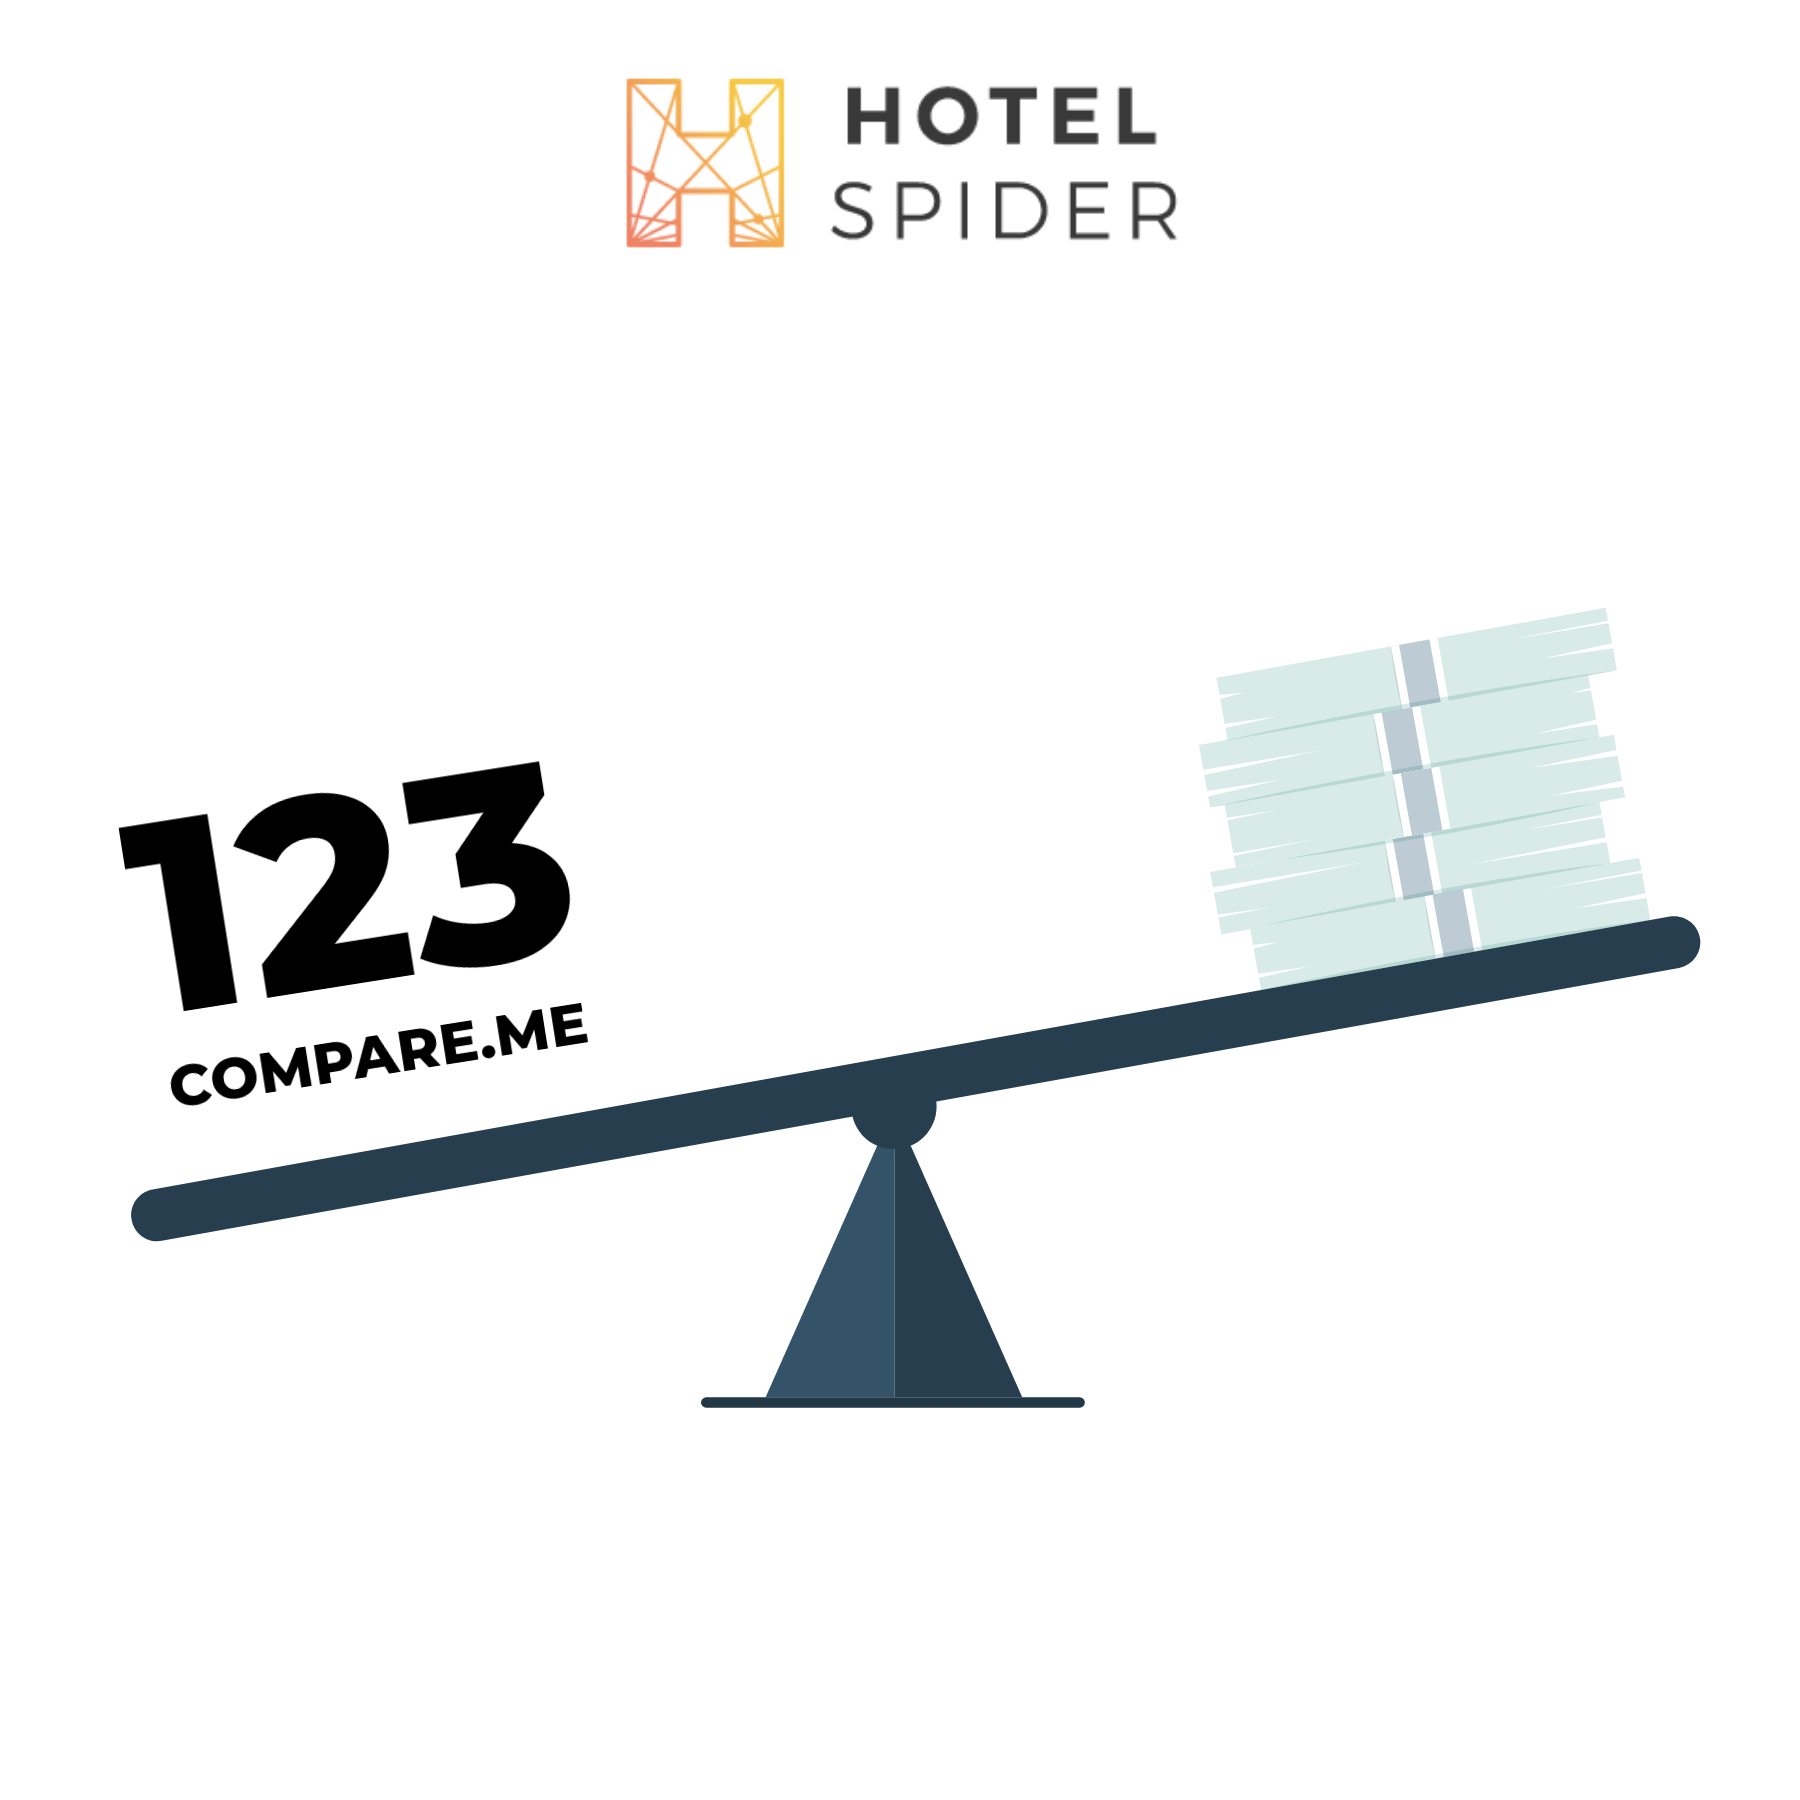 TN-123Compare-Hotel-Spiderat2x.jpg